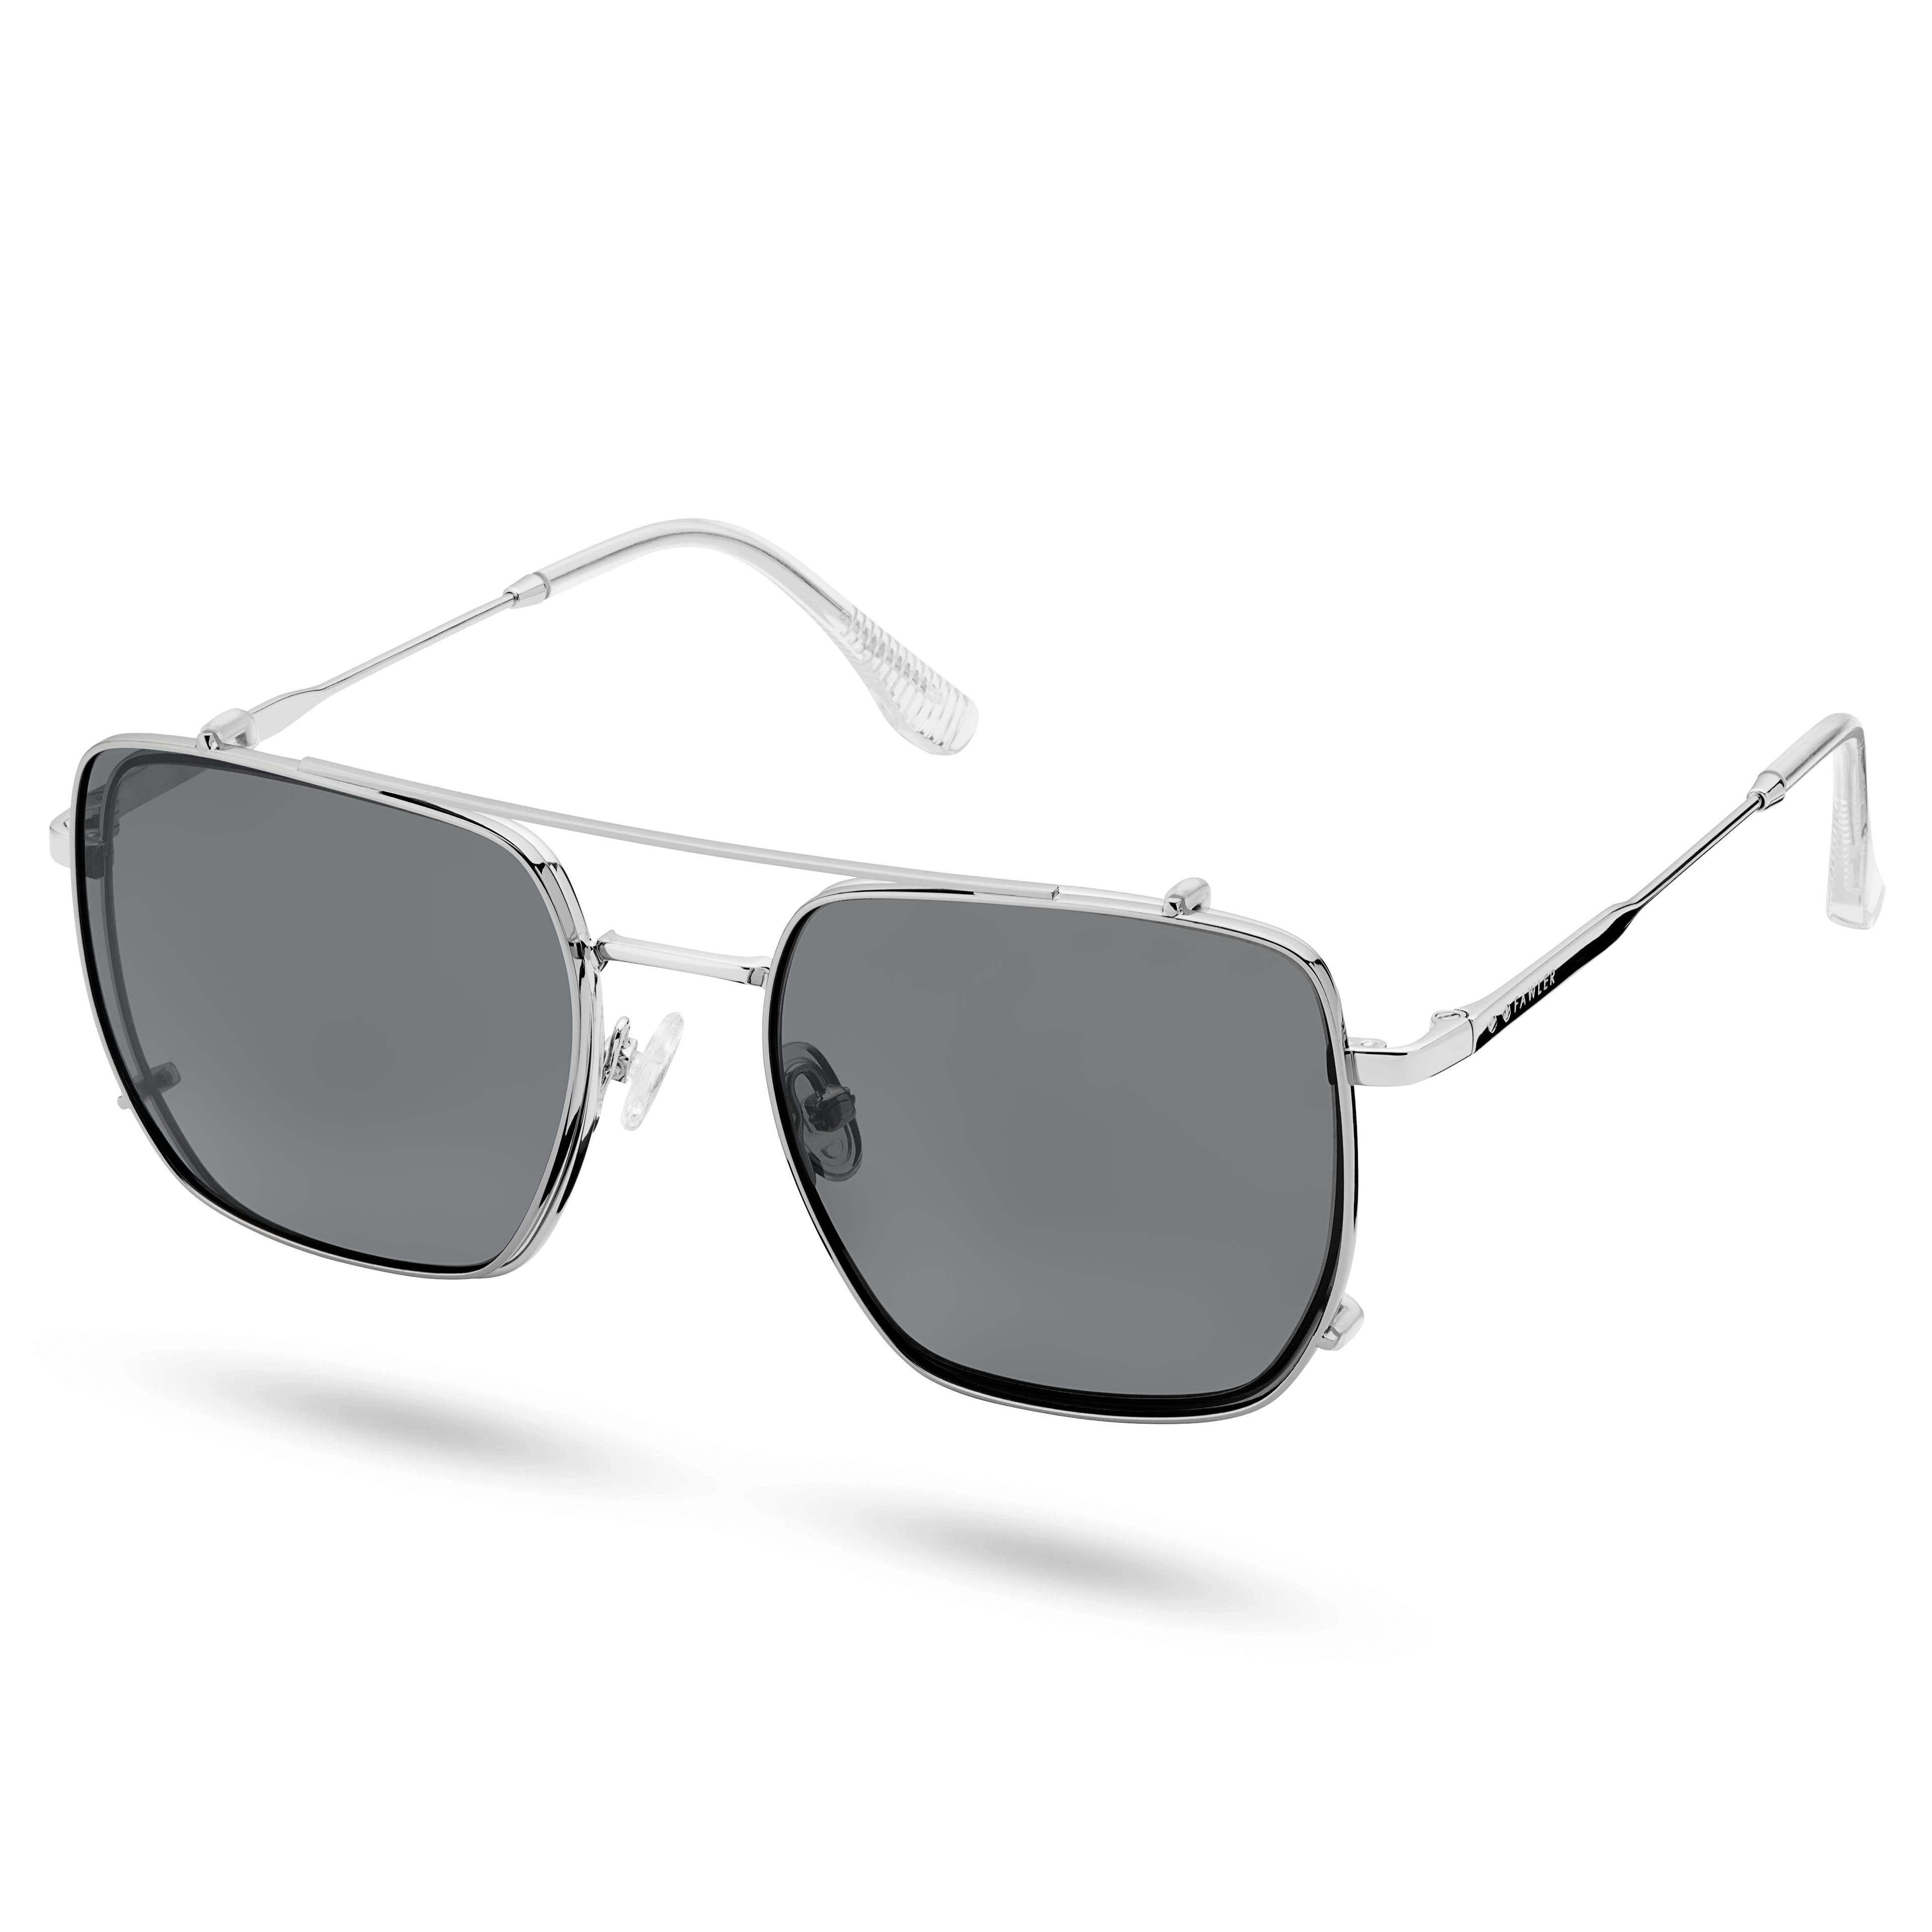 Acél kékfény szűrős áttetsző lencsés szemüveg felcsatolható polarizált napszemüveglencsékkel